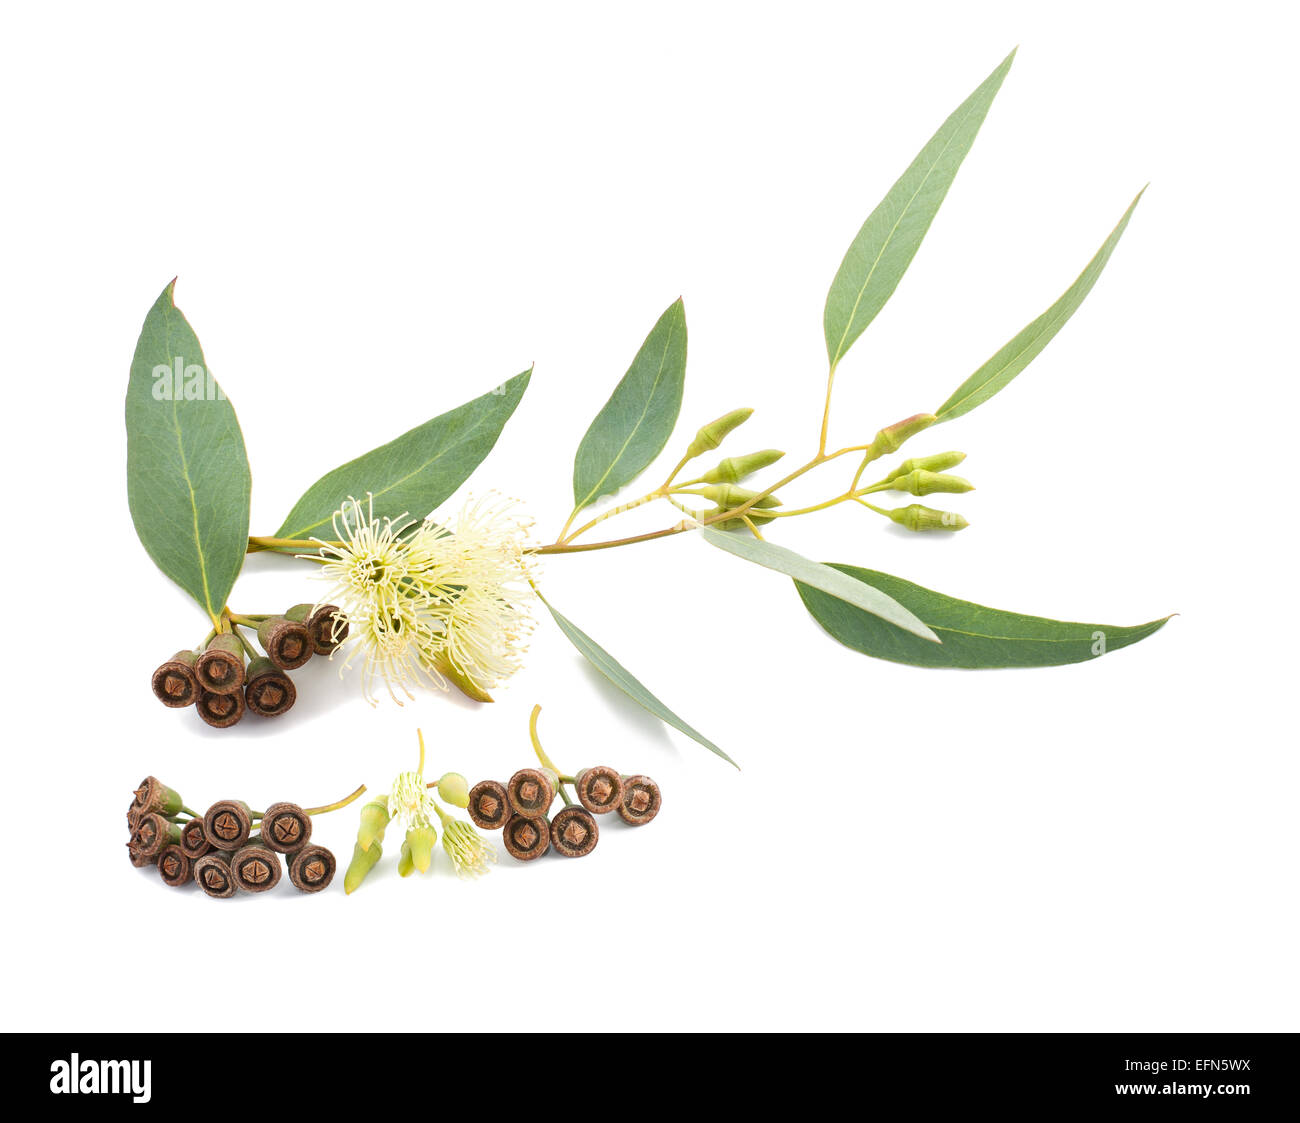 Branche d'eucalyptus avec des fleurs et des graines isolated on white Banque D'Images